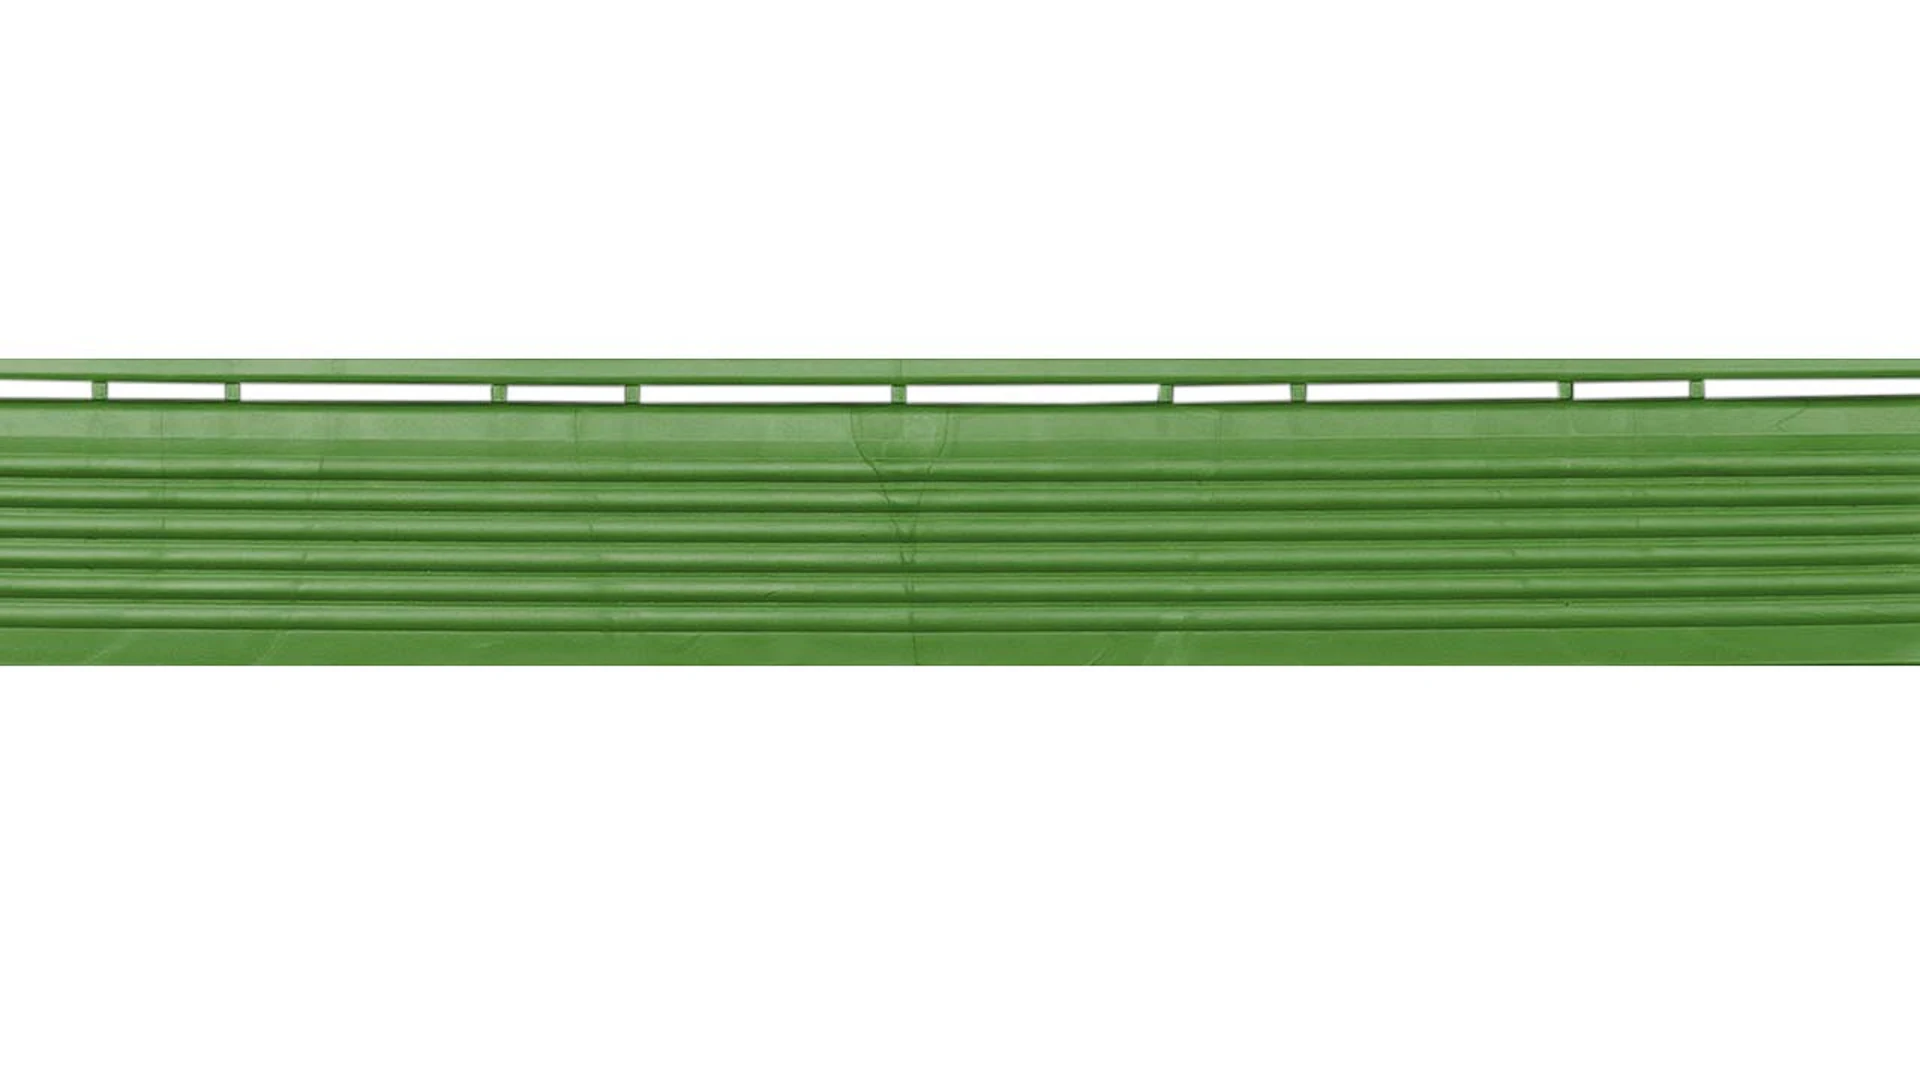 planeo Seitenteil für 40 x 40 cm Klickfliesen - grün